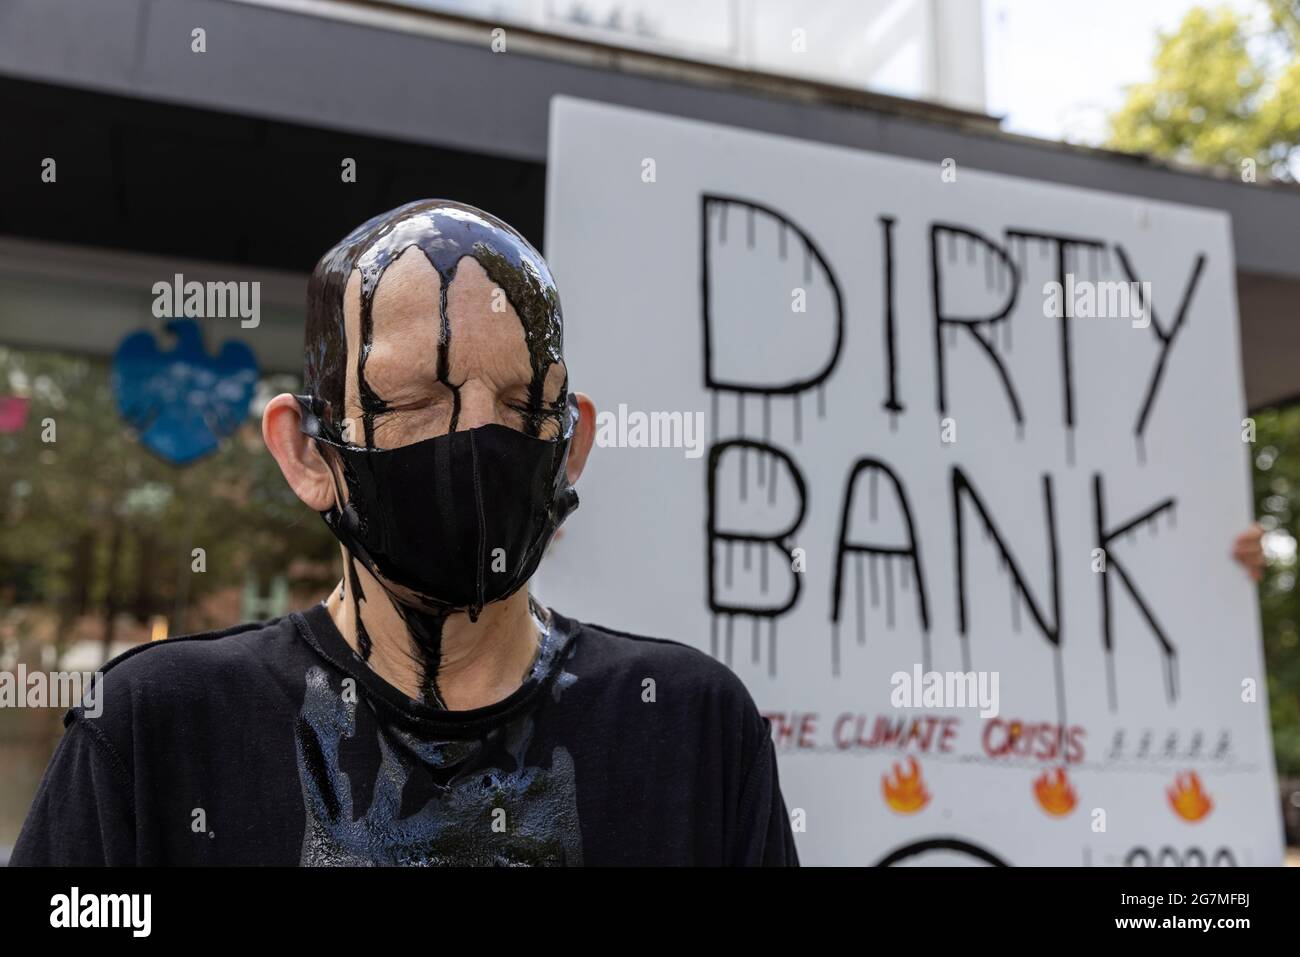 Manifestanti climatici al di fuori di una Barclays Bank che manifestano contro gli investimenti finanziari delle banche in combustibili fossili, St Albans, Hertfordshire, Inghilterra, Regno Unito Foto Stock